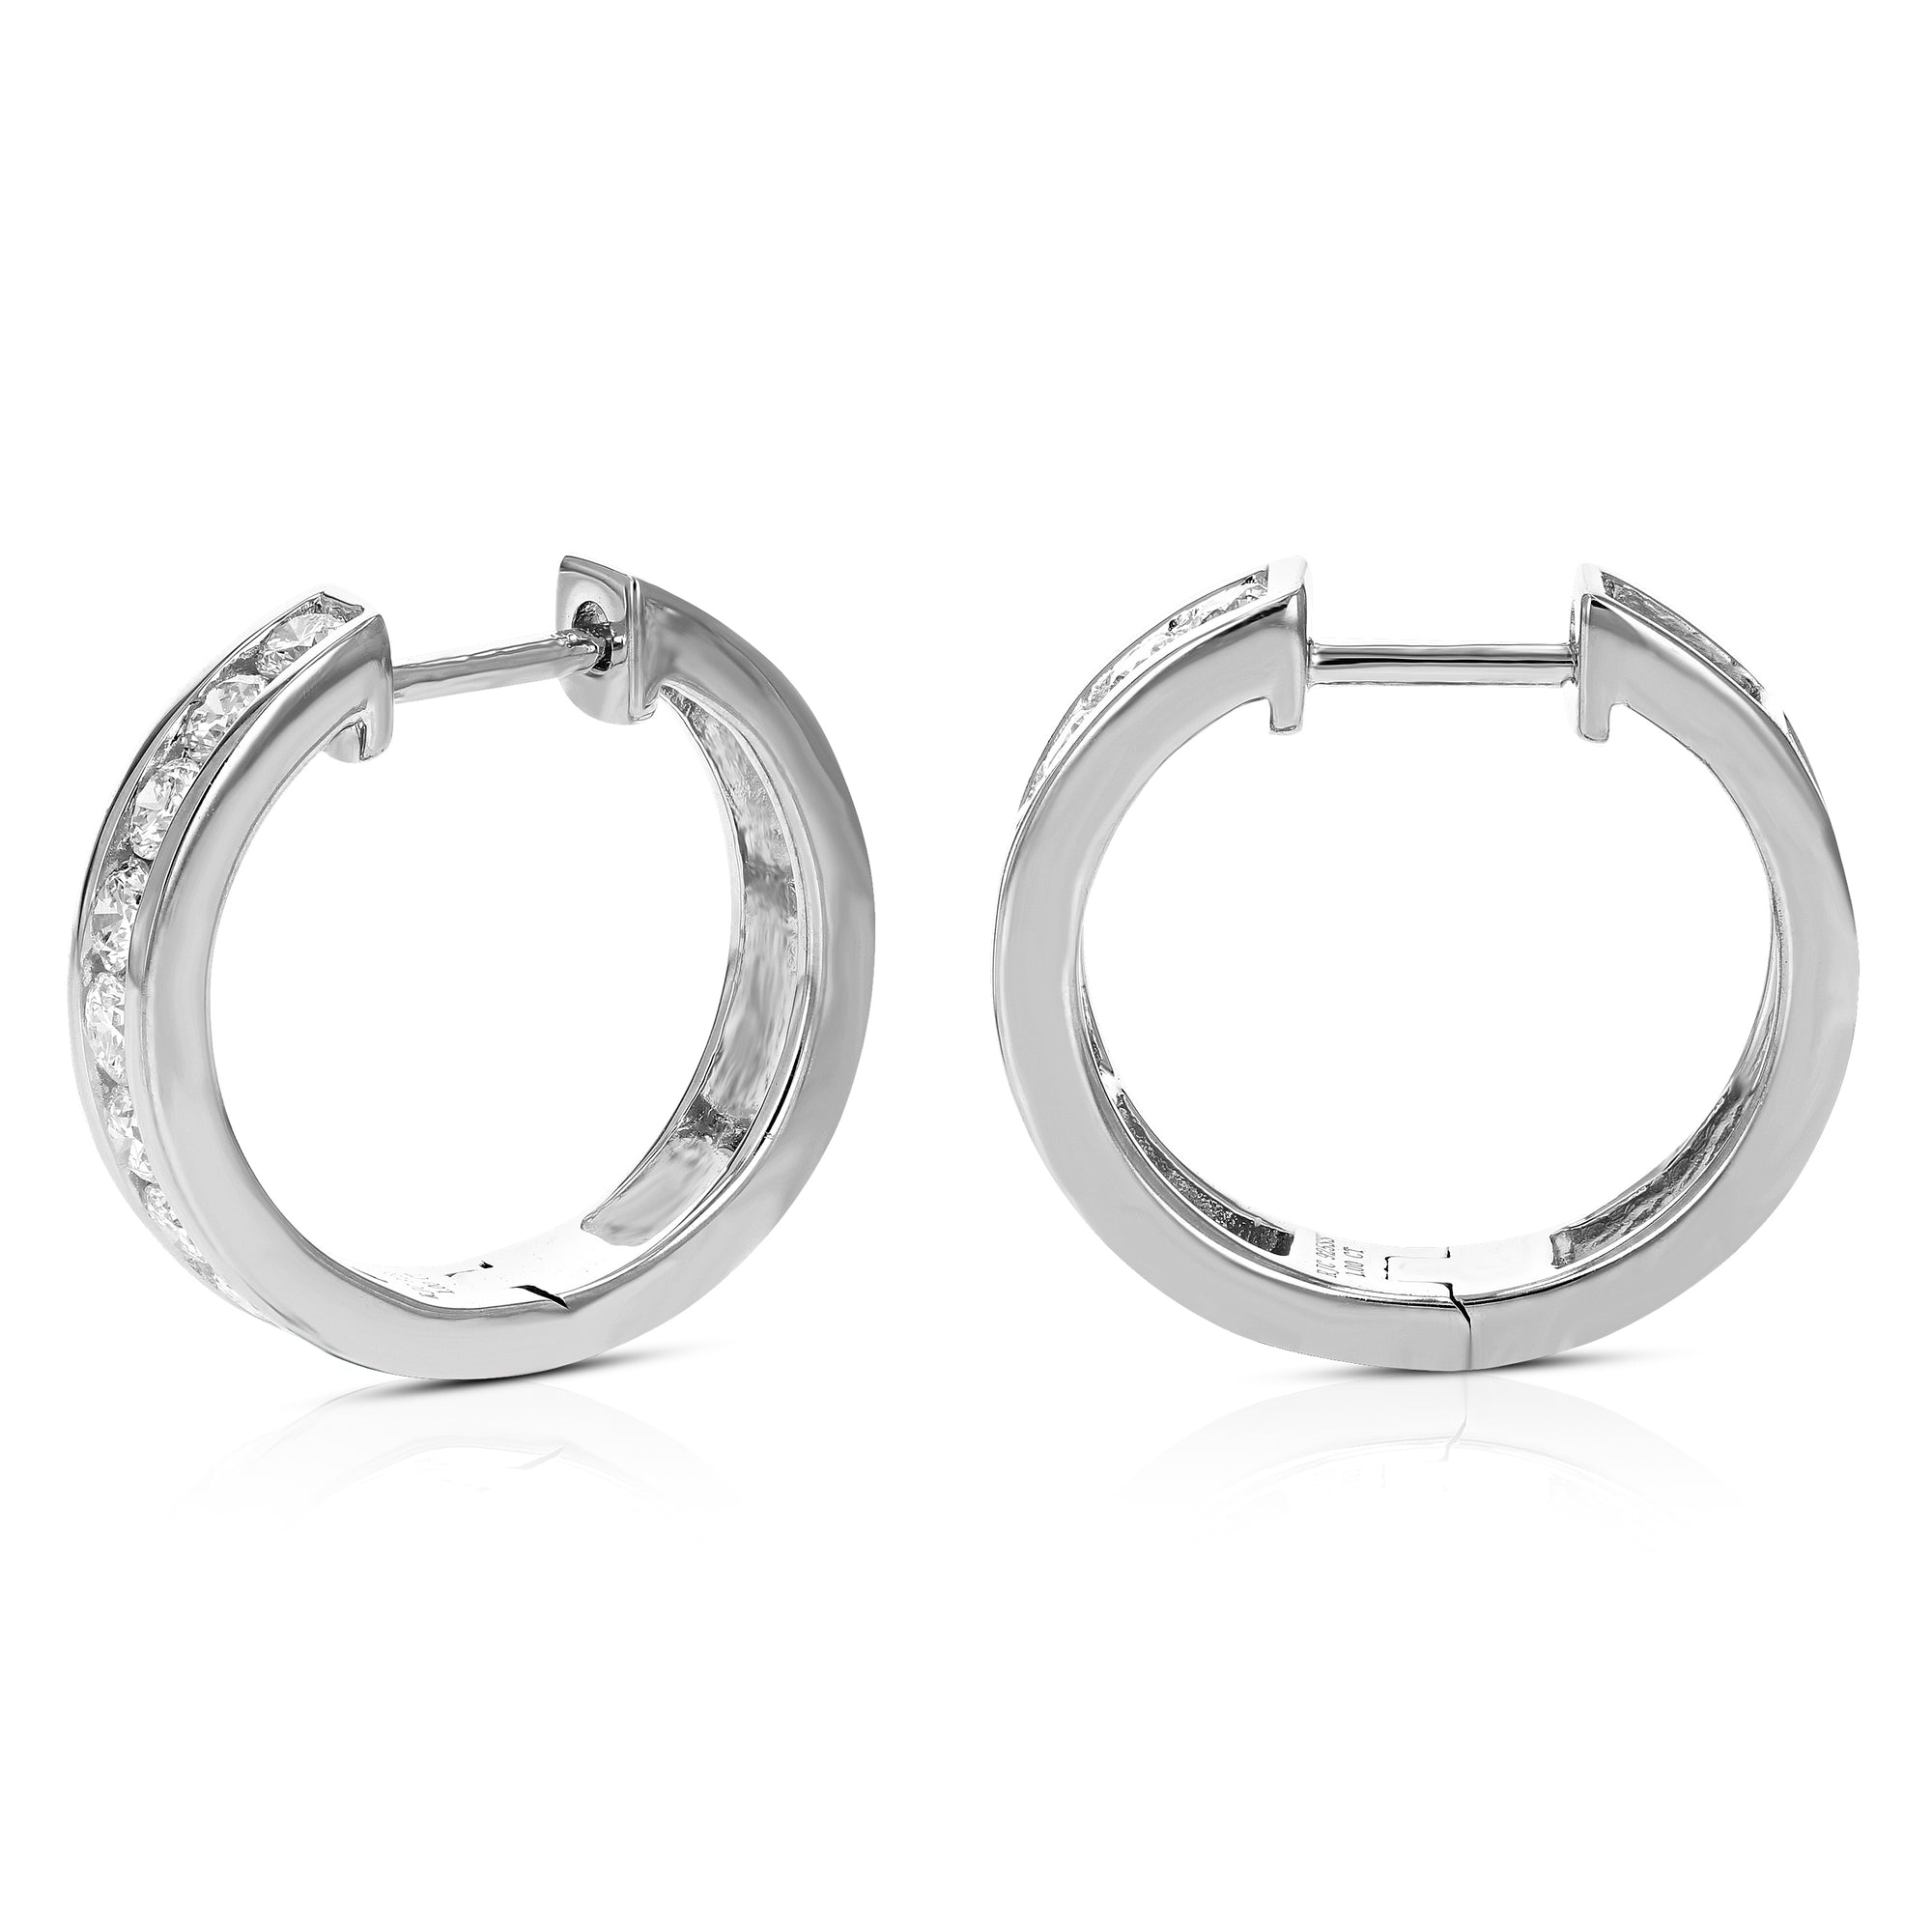 1 cttw Diamond Hoop Earrings for Women, Round Lab Grown Diamond Earrings in .925 Sterling Silver, Channel Setting, 2/3 Inch